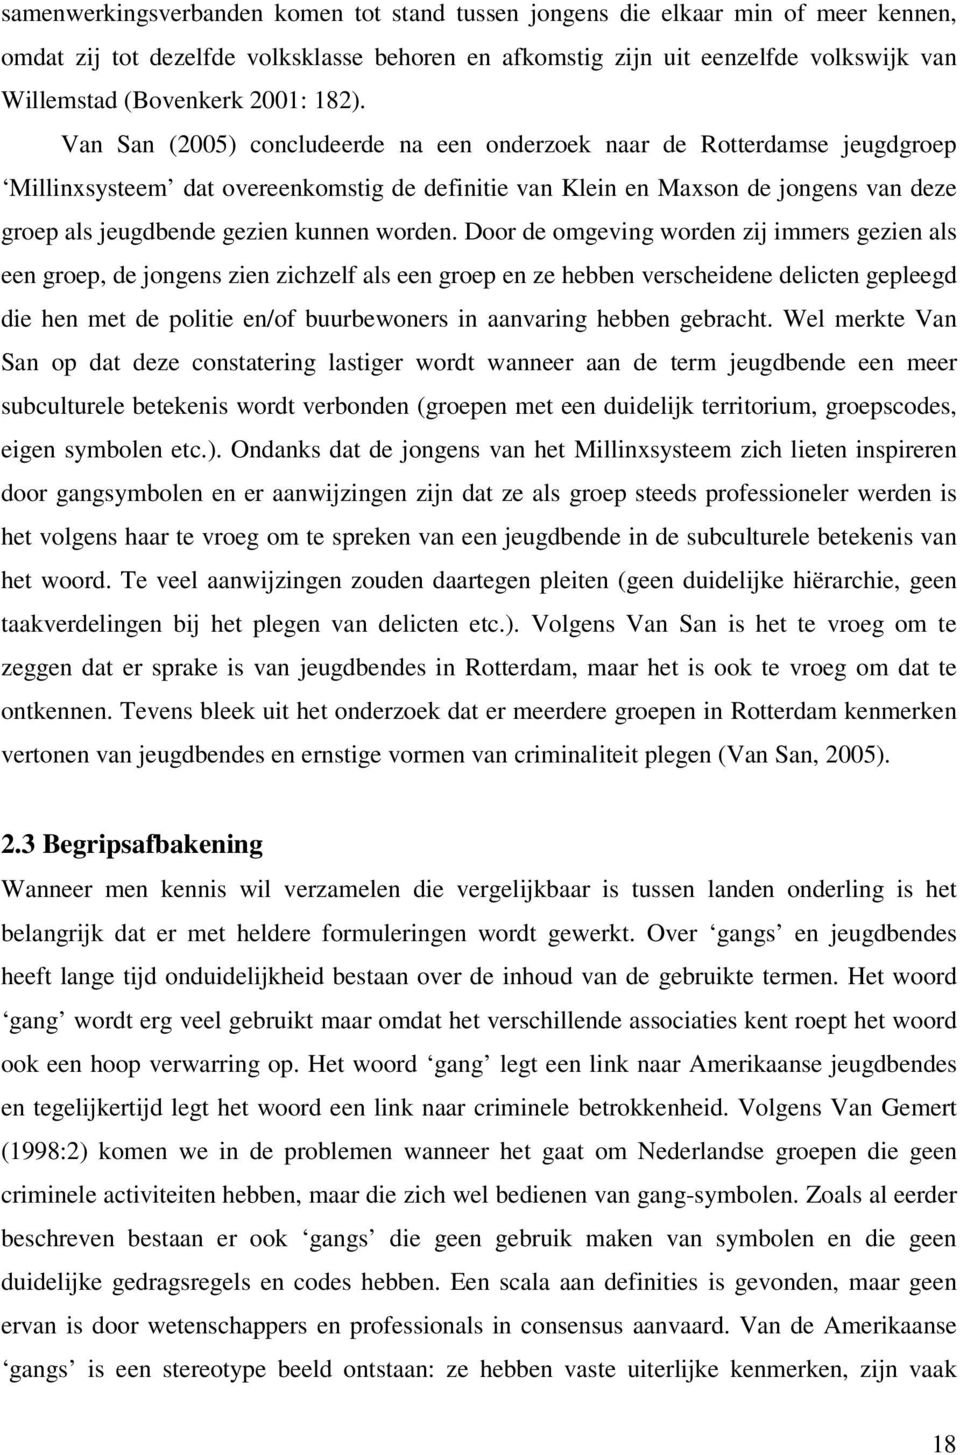 Van San (2005) concludeerde na een onderzoek naar de Rotterdamse jeugdgroep Millinxsysteem dat overeenkomstig de definitie van Klein en Maxson de jongens van deze groep als jeugdbende gezien kunnen